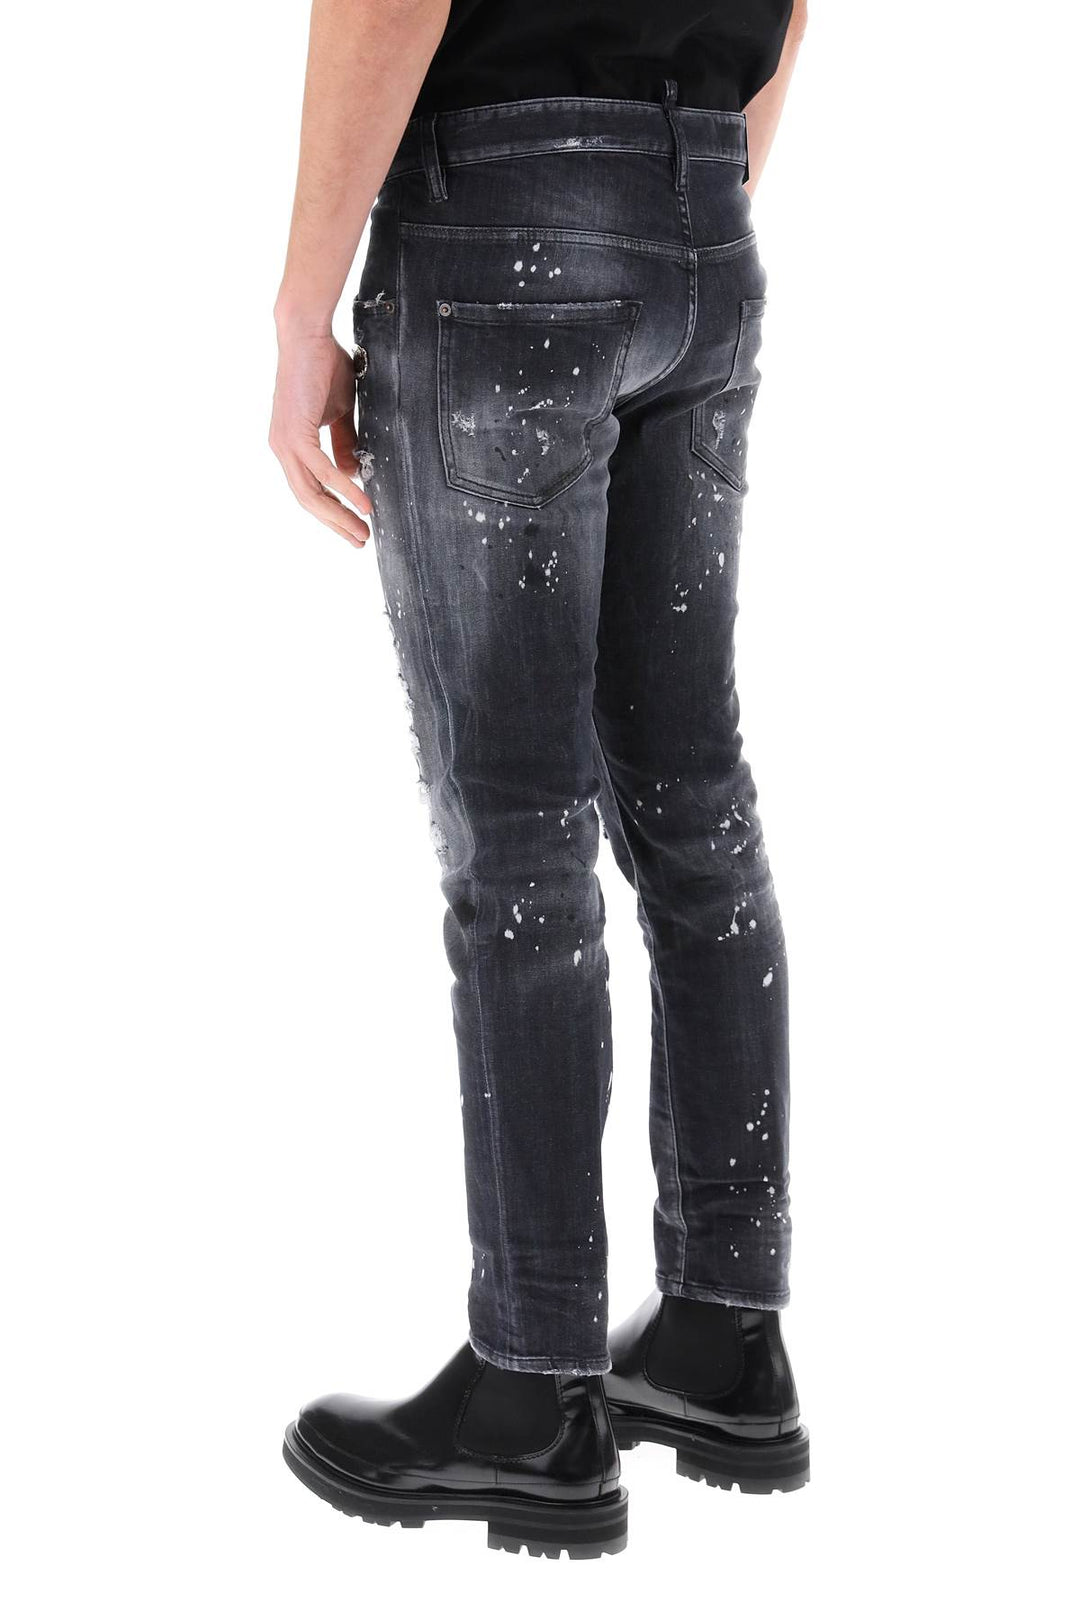 Jeans Skater In Black Diamond&Studs Wash - Dsquared2 - Uomo